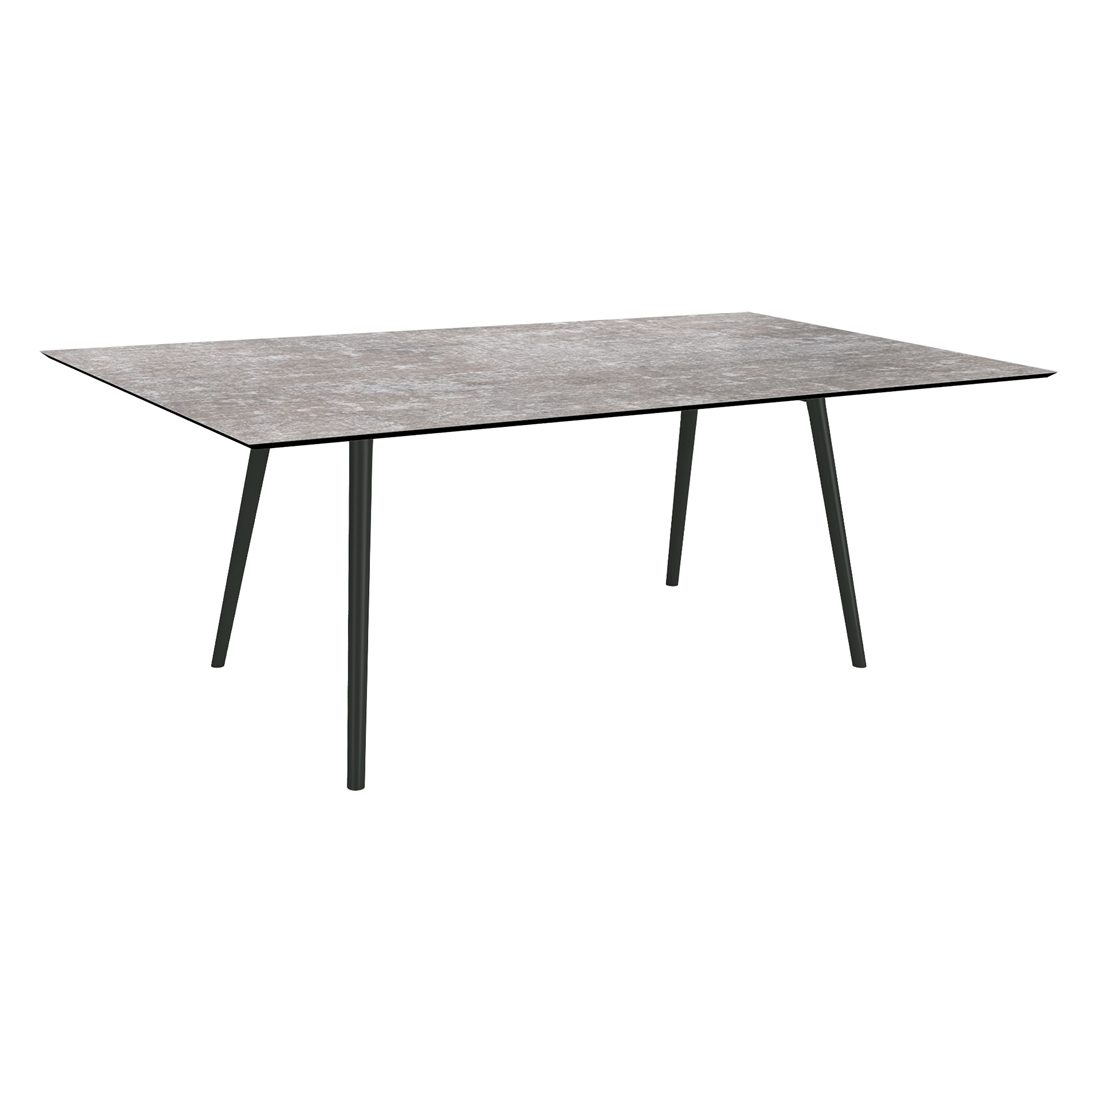 Stern "Interno" Gartentisch, Gestell Alu schwarz matt, Rundrohr, Tischplatte HPL Metallic Grau, 180x100 cm